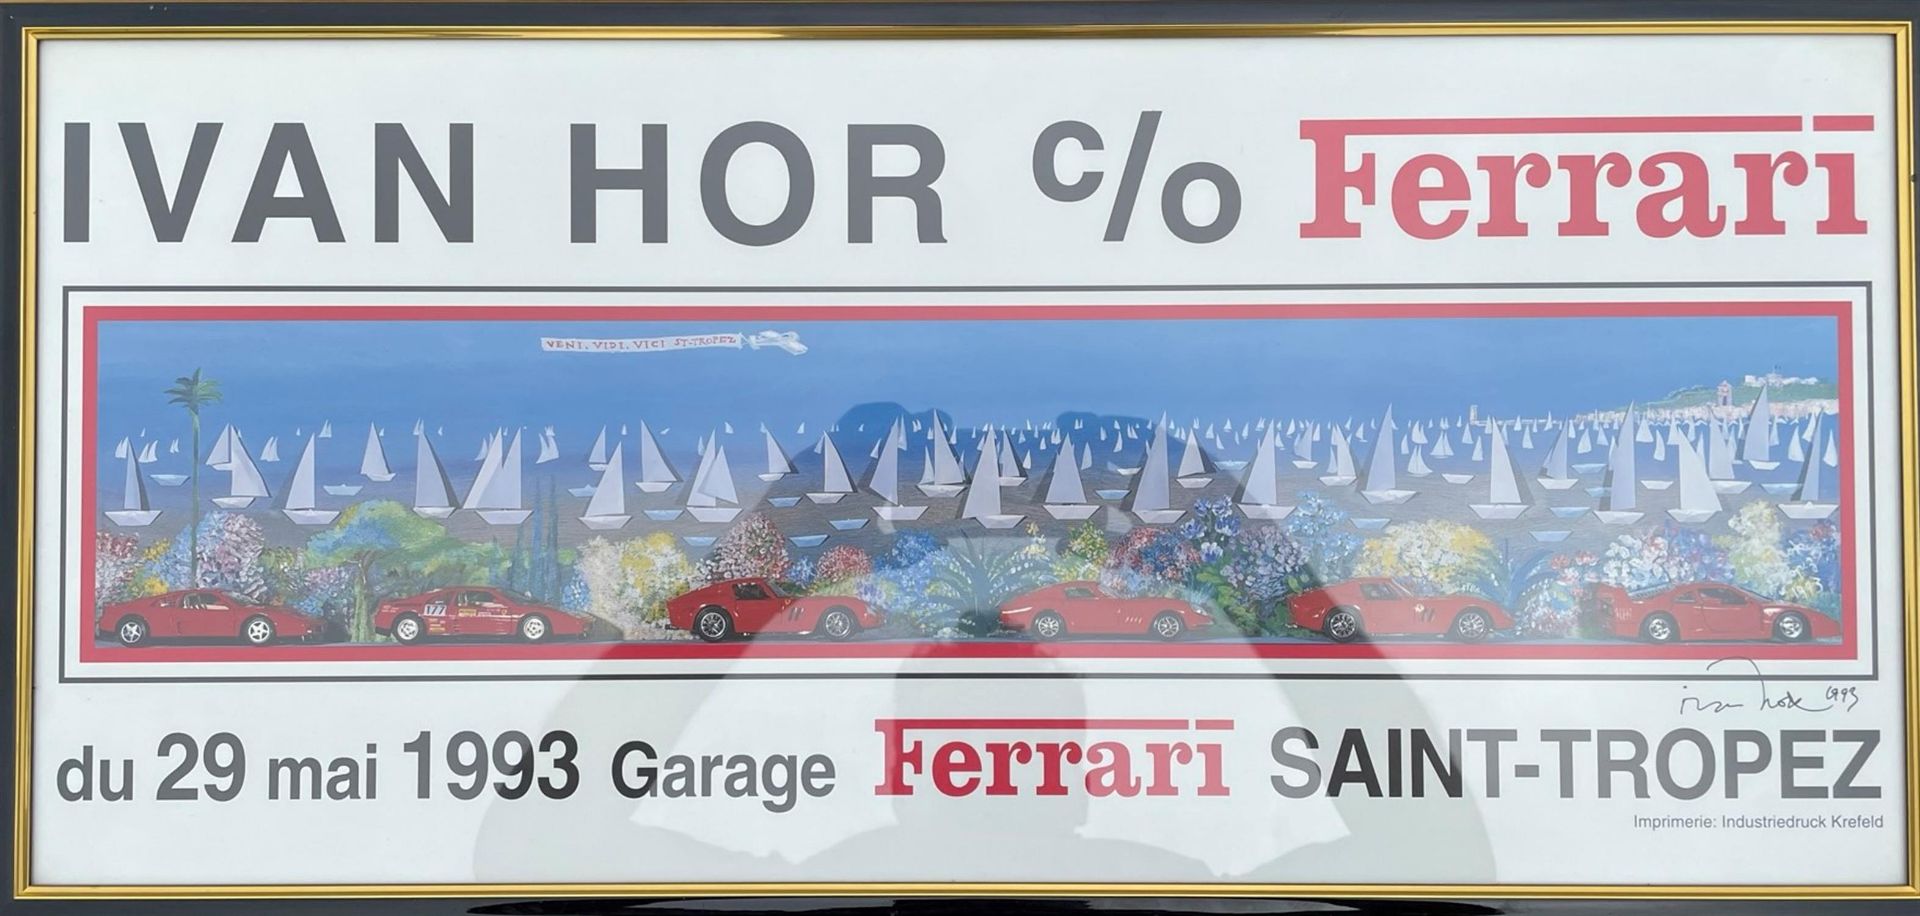 Ivan Hor Ferrari Saint Tropez Garage Poster